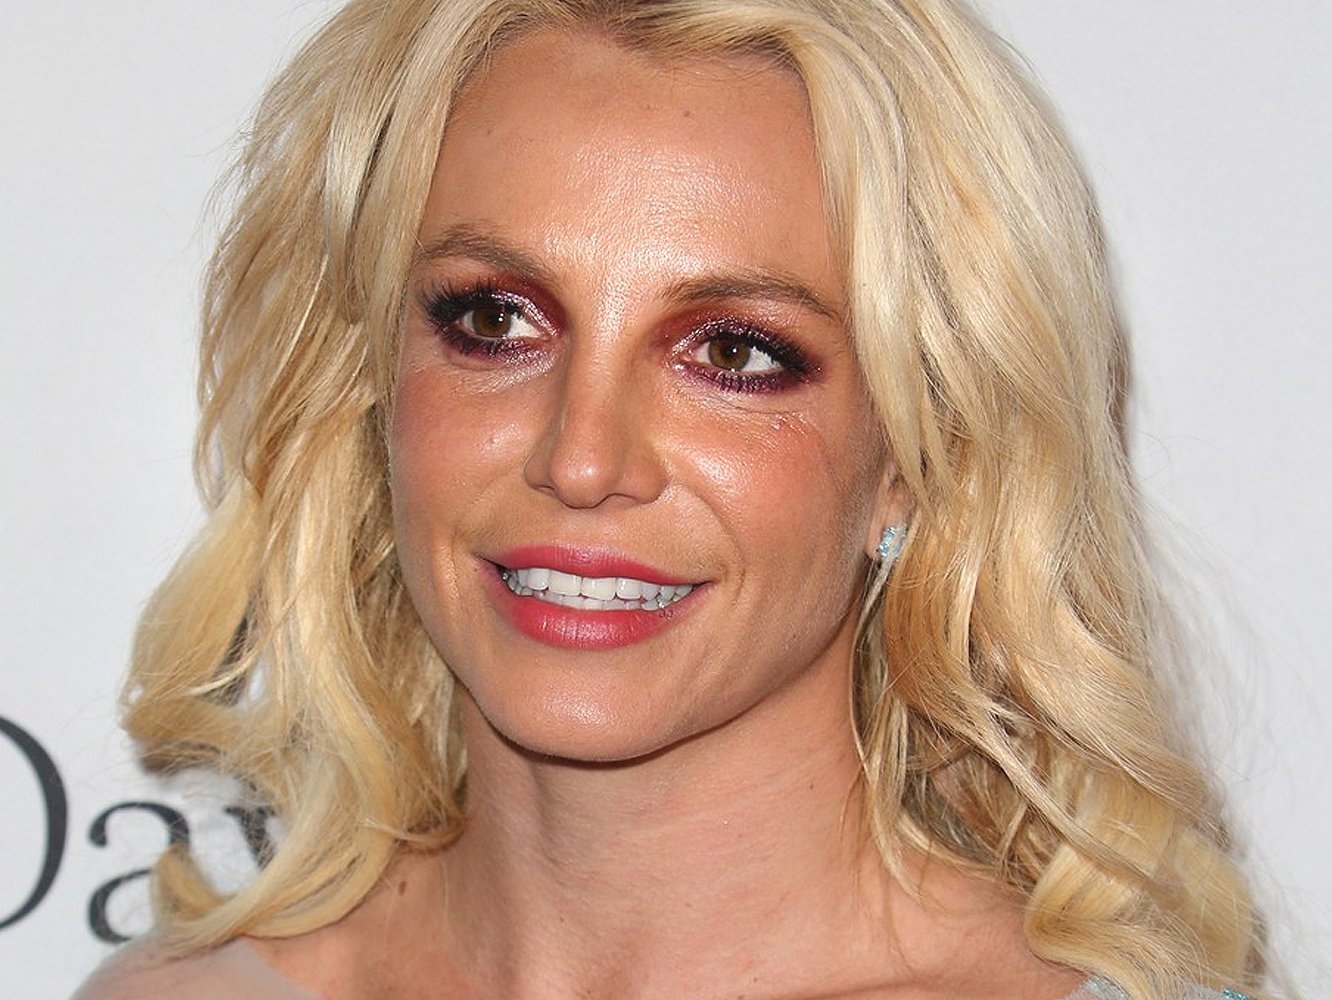  Britney Spears, por partida doble entre los peores dúos según WatchMojo